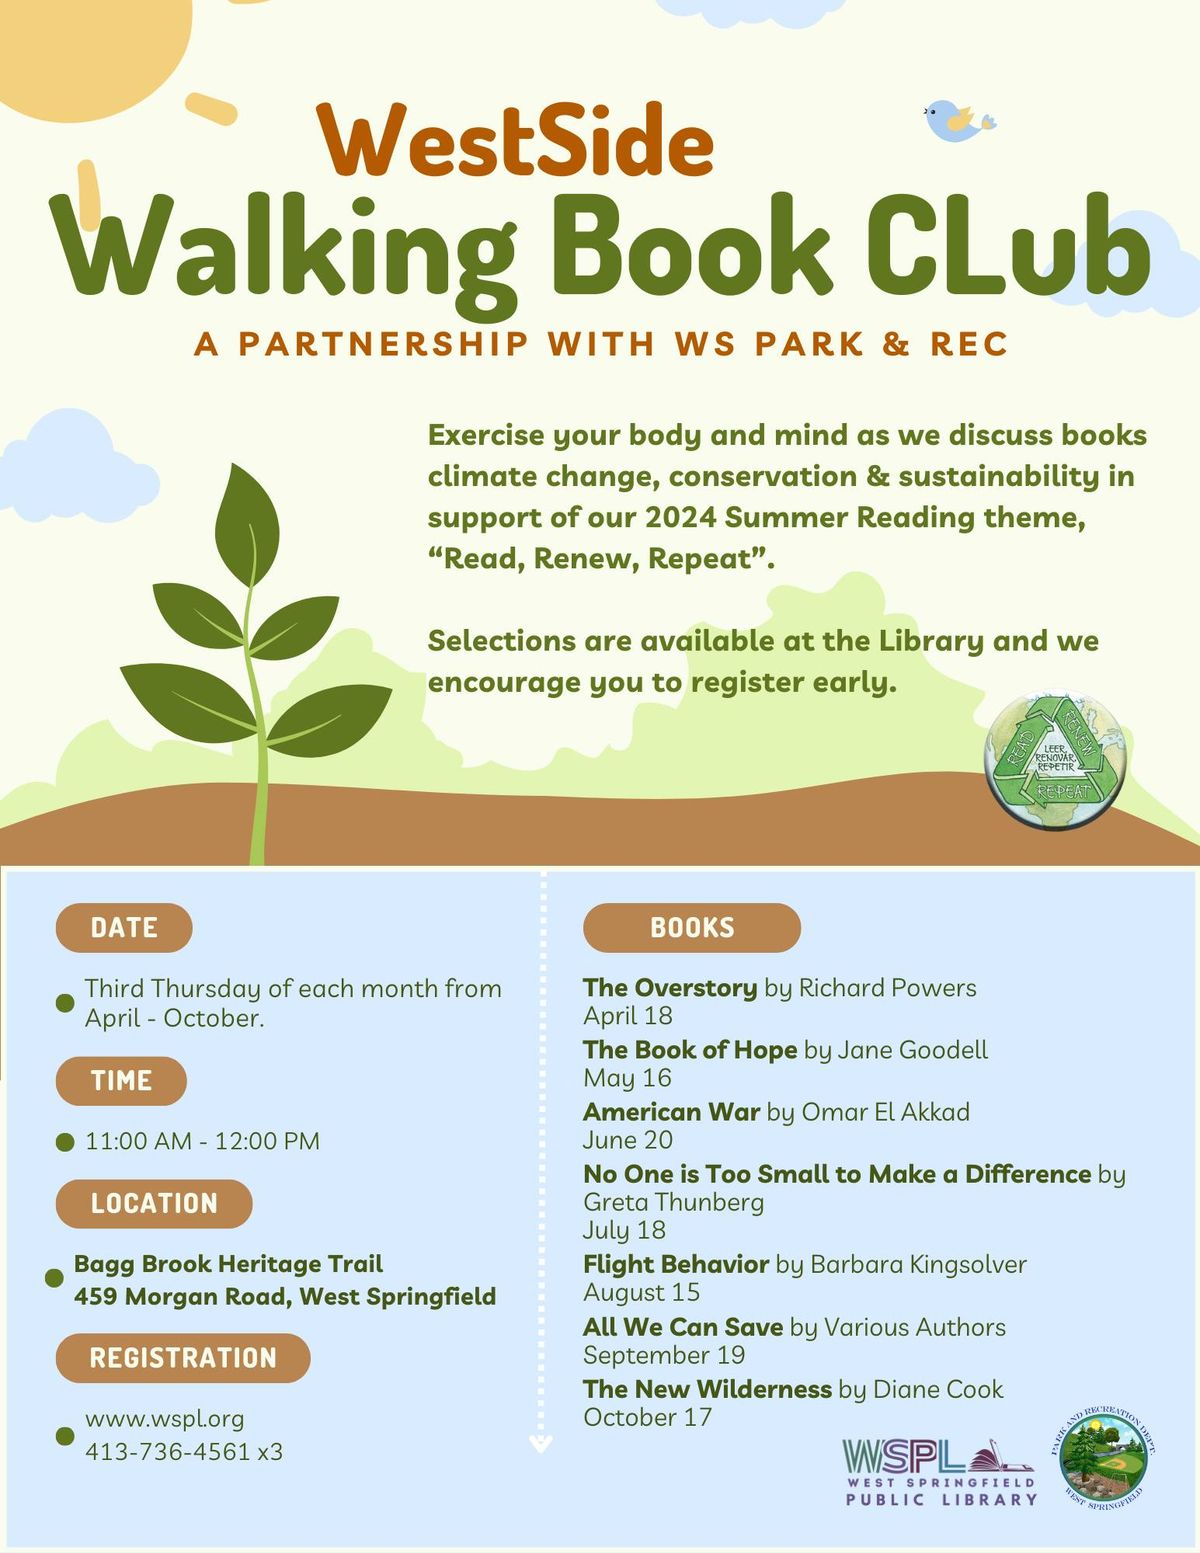 WestSide Walking Book Club